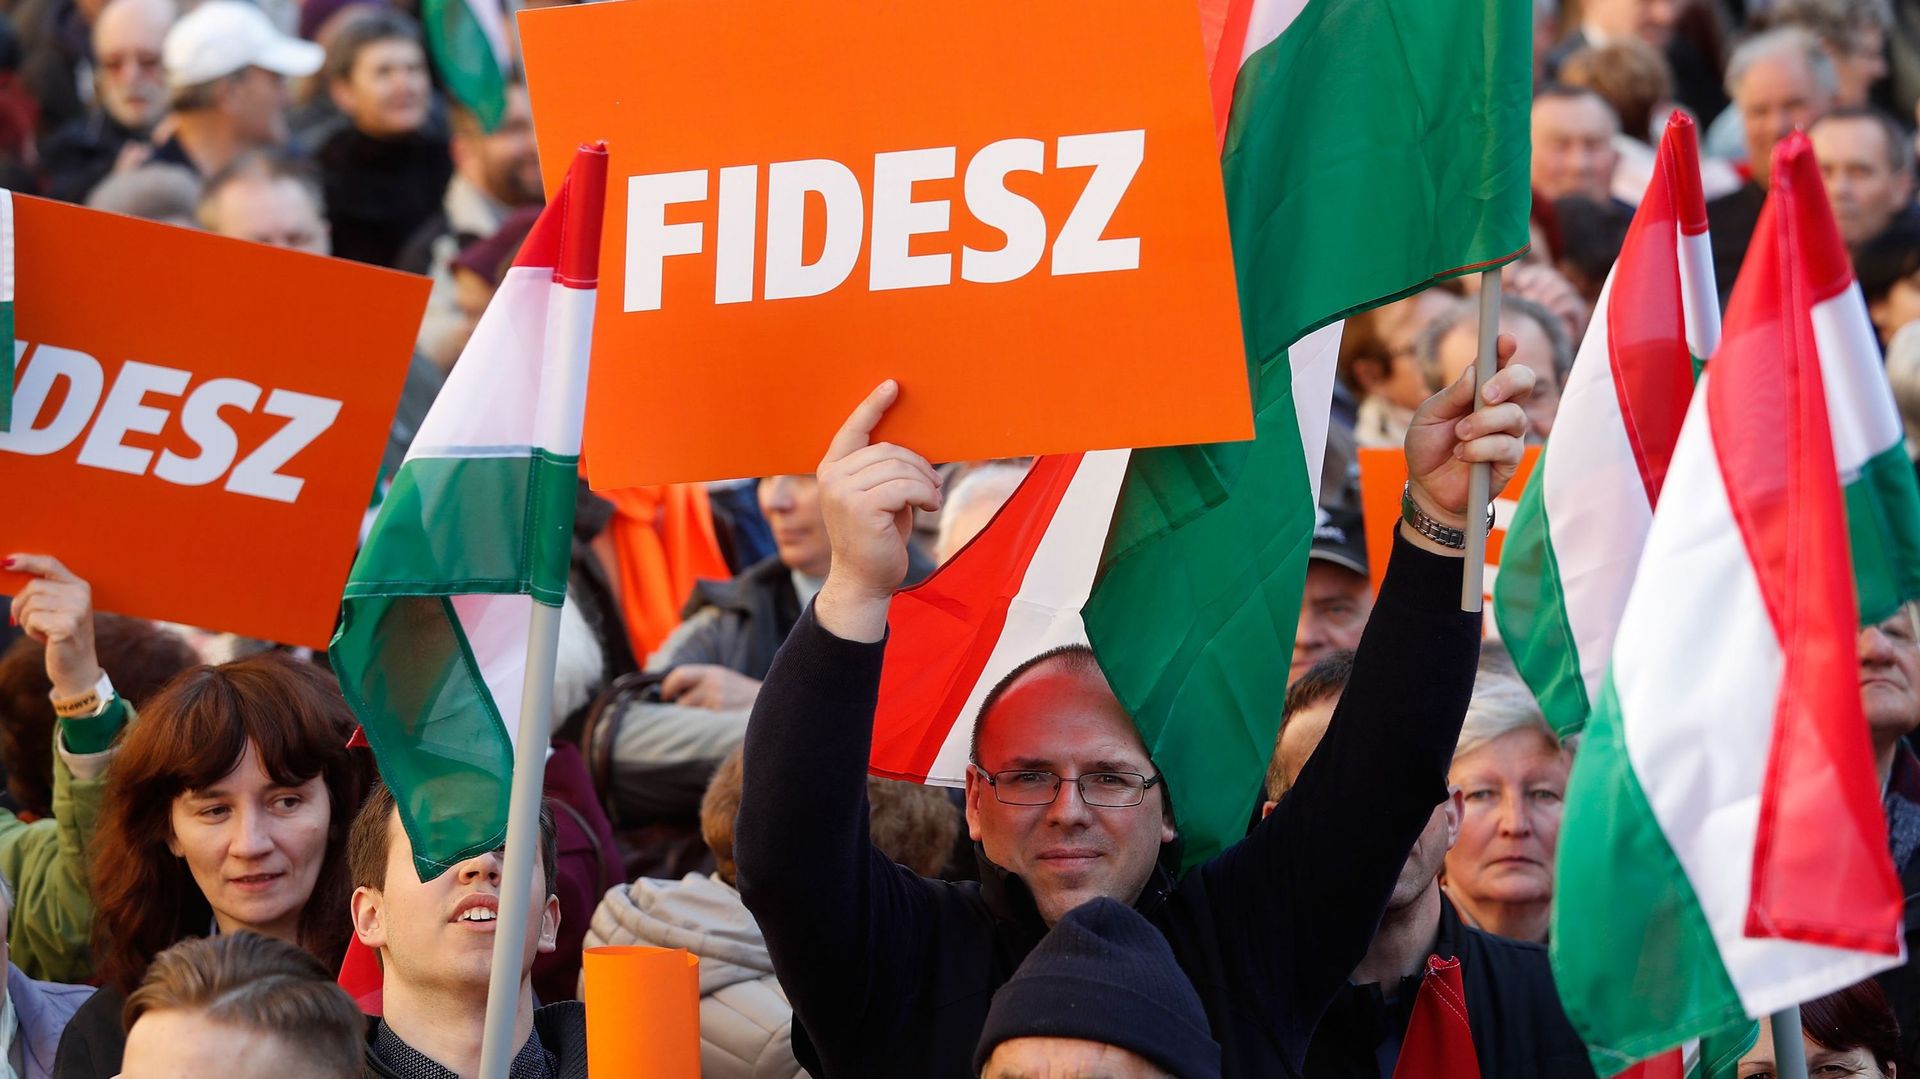 Parlement européen : plusieurs partis ultraconservateurs tentent de rassembler l’extrême droite européenne. Parmi eux, le Fidesz (Hongrie)